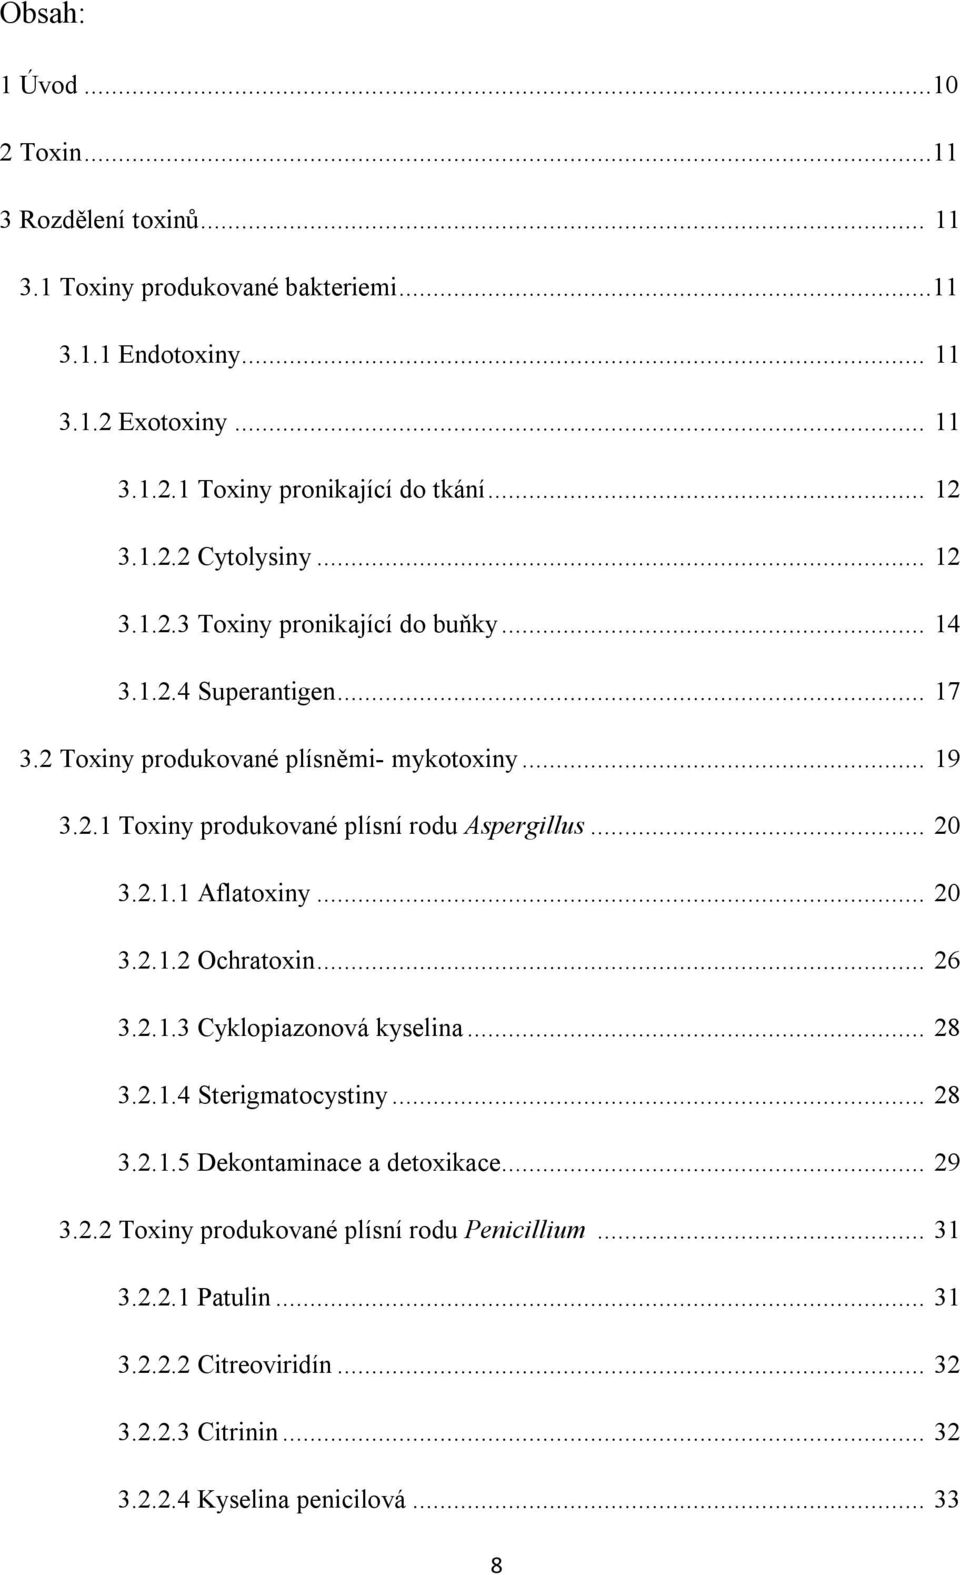 .. 20 3.2.1.1 Aflatoxiny... 20 3.2.1.2 Ochratoxin... 26 3.2.1.3 Cyklopiazonová kyselina... 28 3.2.1.4 Sterigmatocystiny... 28 3.2.1.5 Dekontaminace a detoxikace... 29 3.2.2 Toxiny produkované plísní rodu Penicillium.